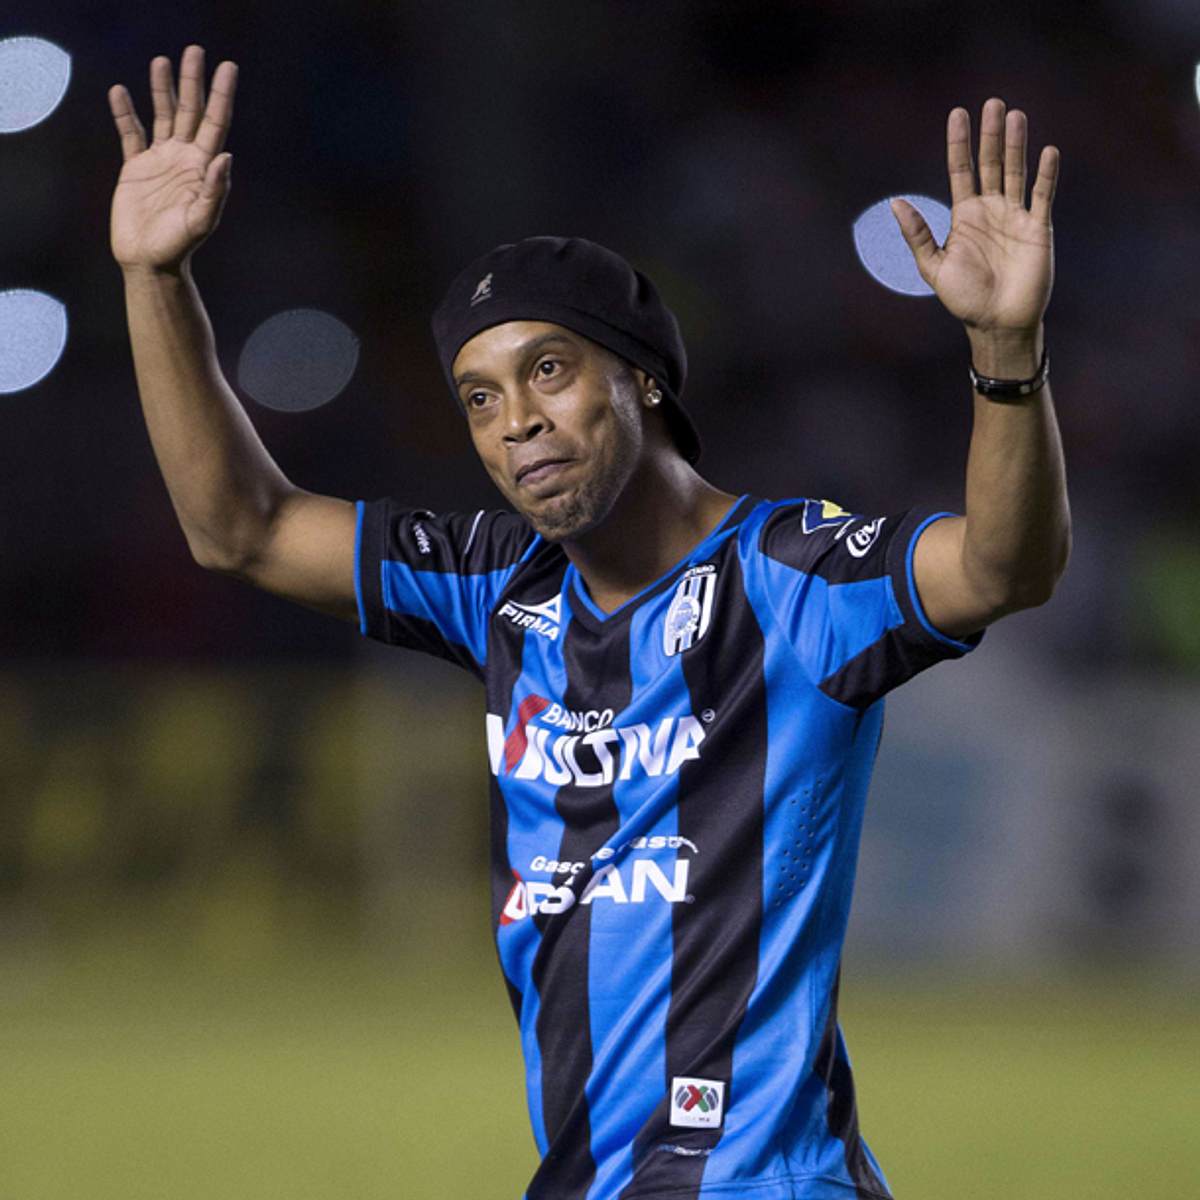 Ein Politiker hat Ronaldinho rassistisch beleidigt.